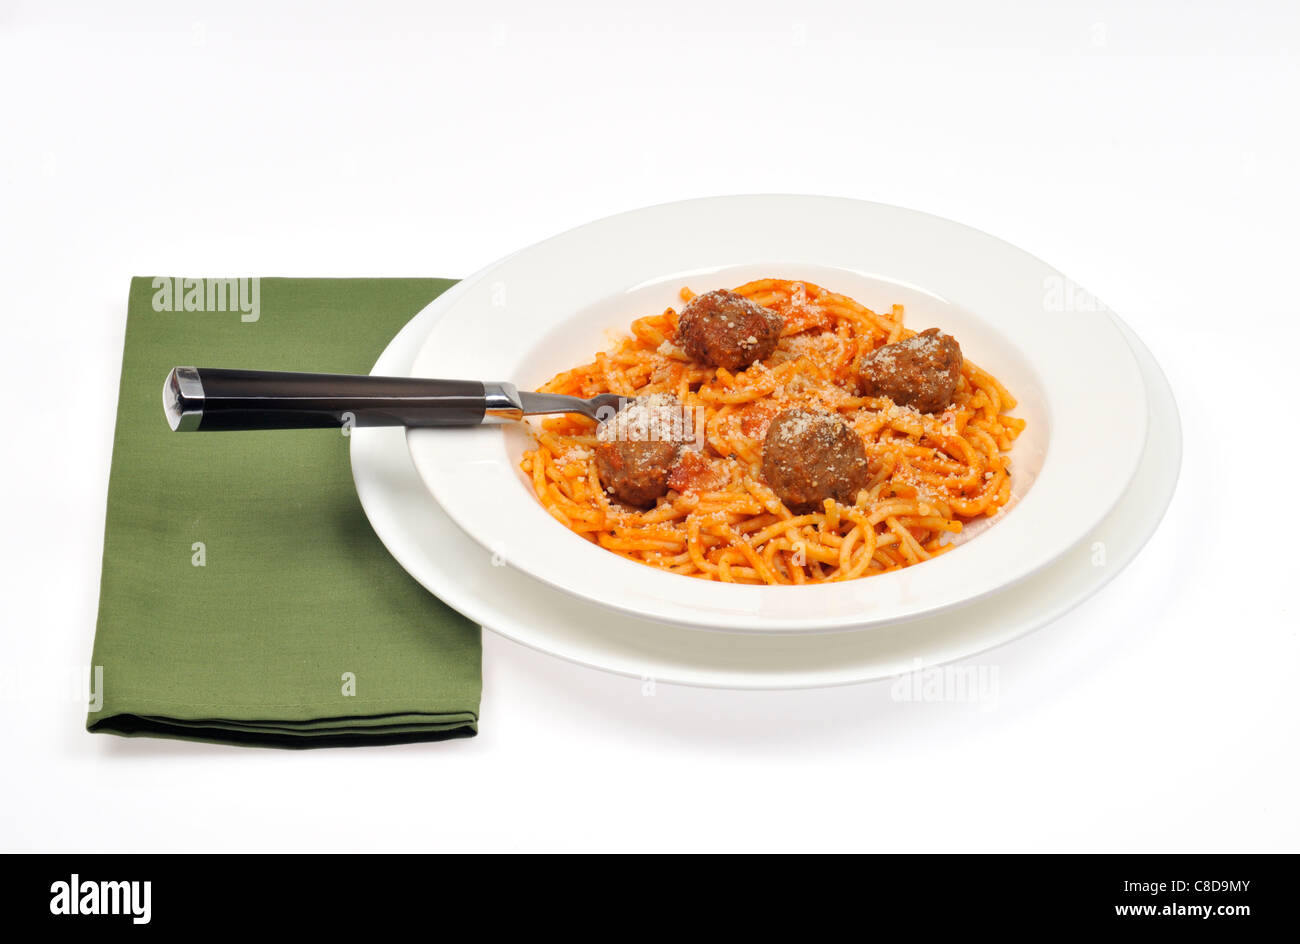 Eine Portion Spaghetti und Fleischbällchen garniert mit Käse in einer weißen Schüssel mit Löffel und grünen Serviette auf weißem Hintergrund. Stockfoto